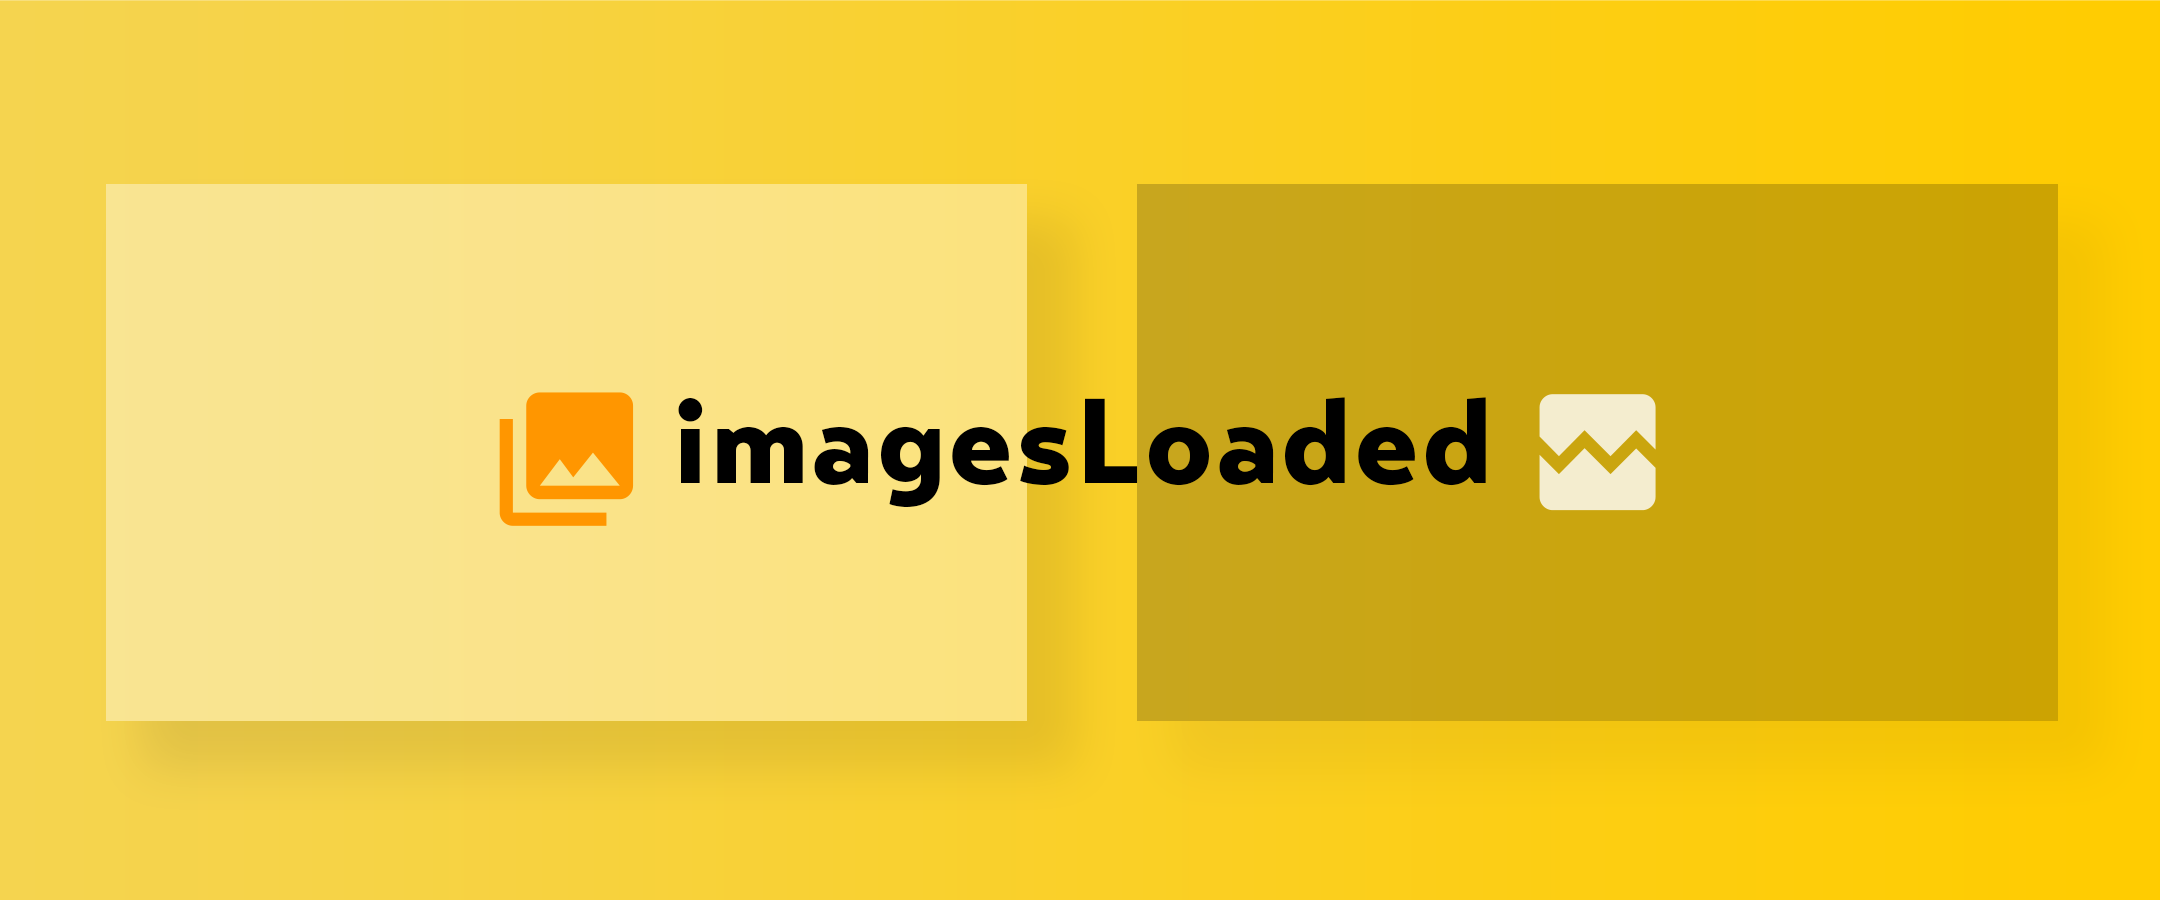 「imagesLoaded」を使って画像の読み込みを検知する